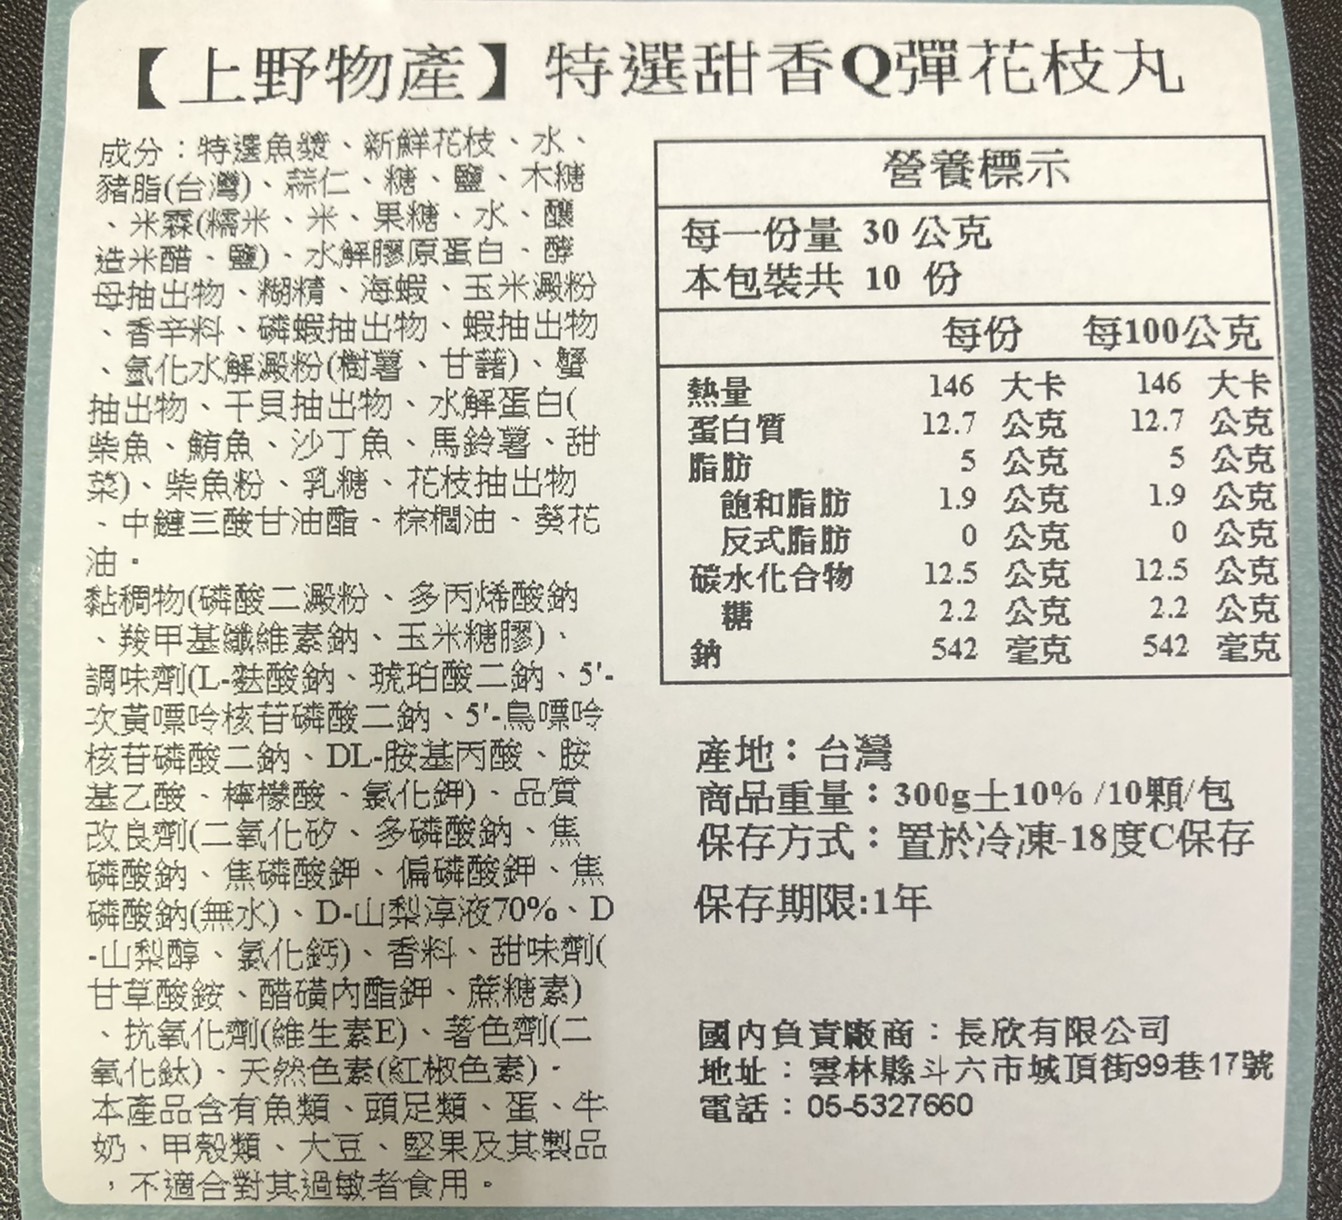       【上野物產】特選甜香Q彈花枝丸 x10包(300g±10%/包)